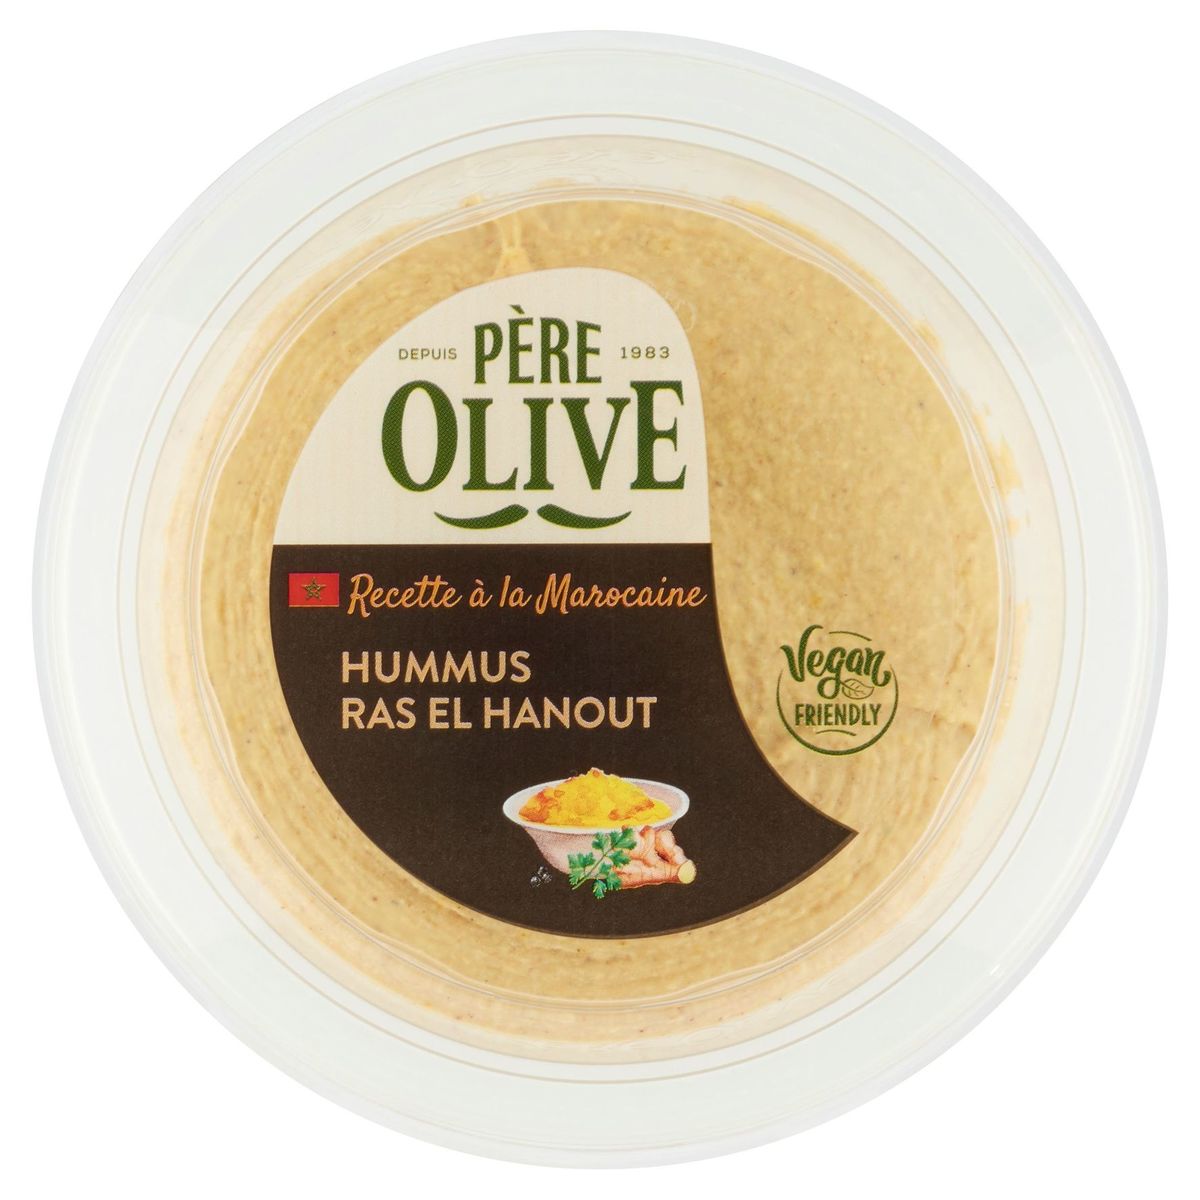 Père Olive Hummus Ras el Hanout 175 g